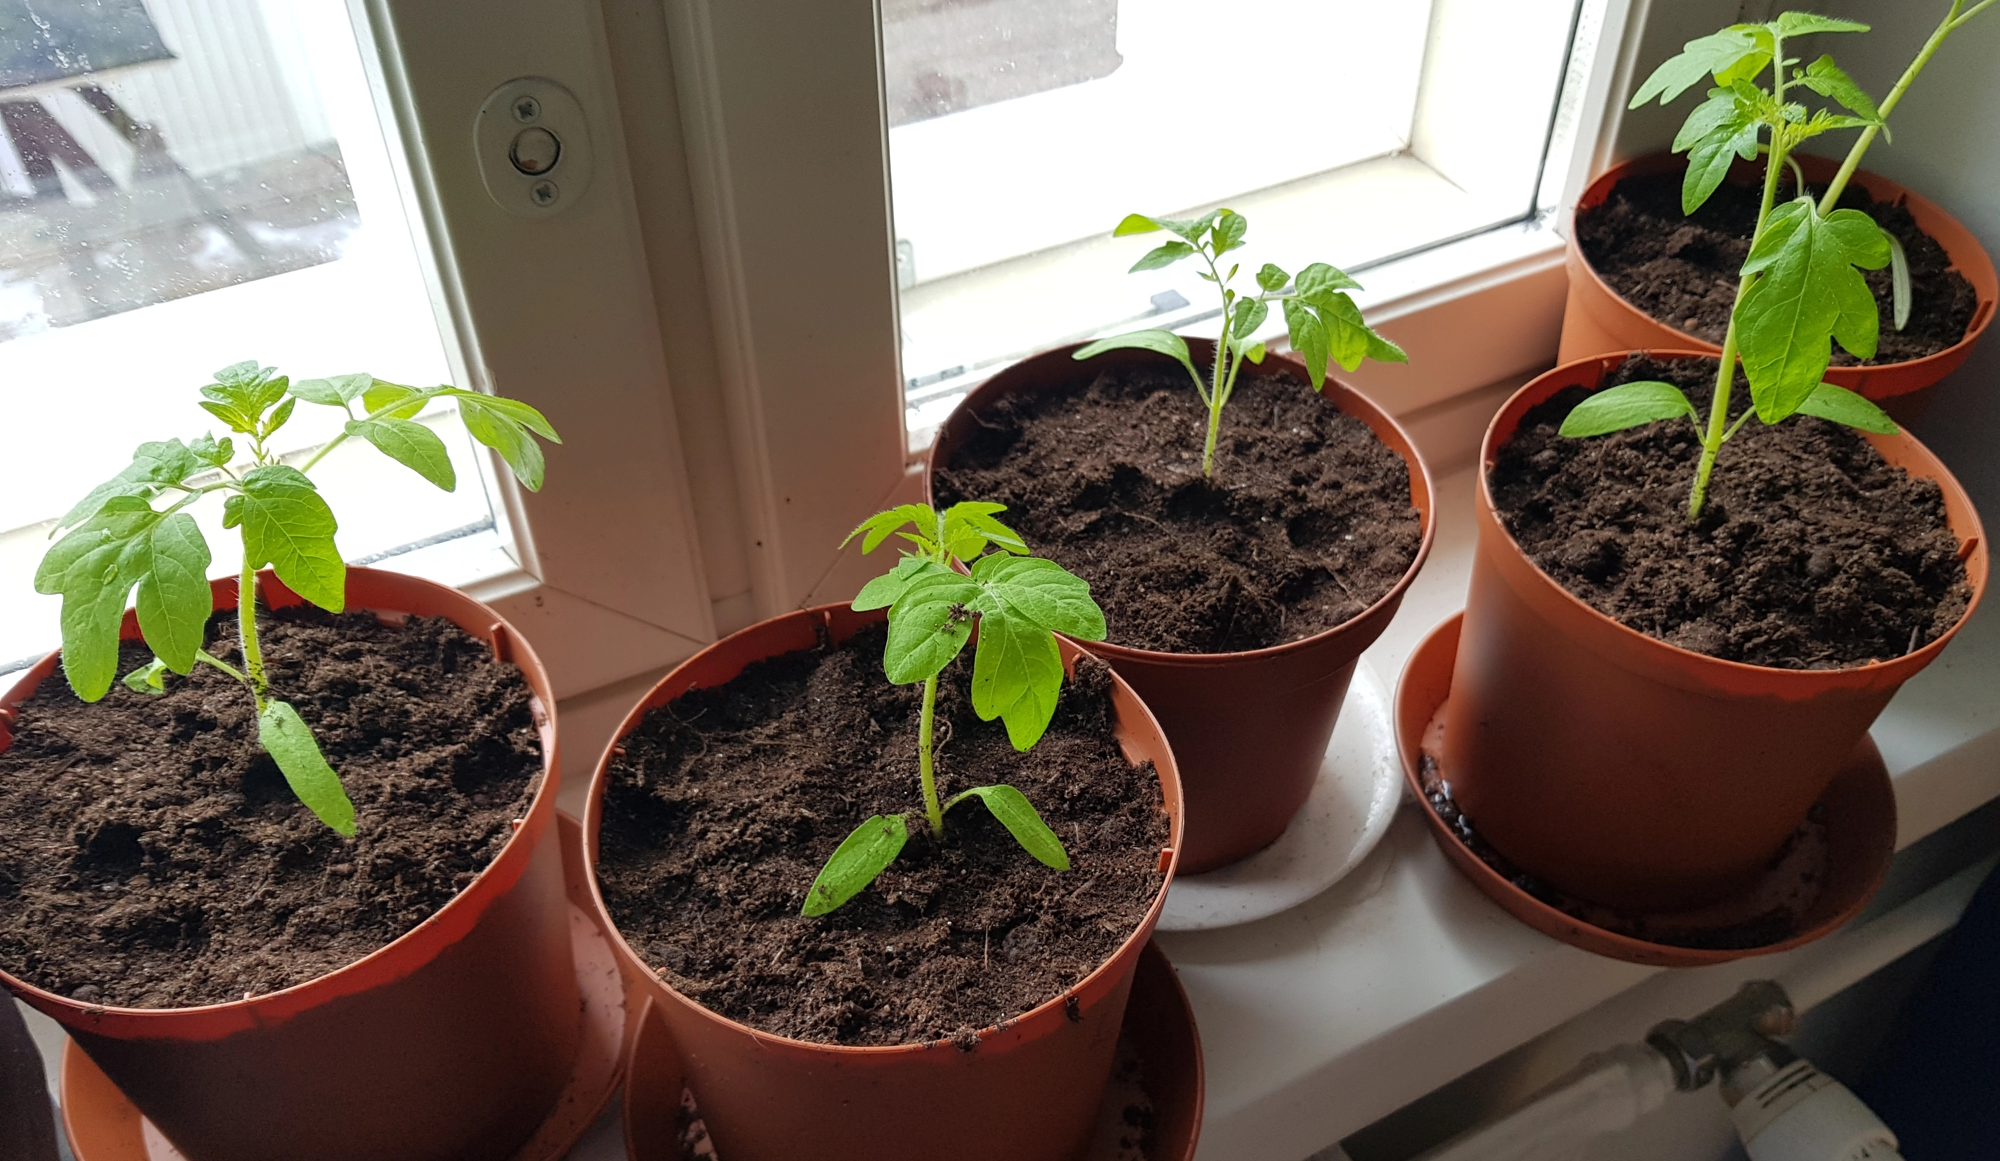 Tomaatin taimia ikkunalaudalla muovisissa istutusruukuissa.